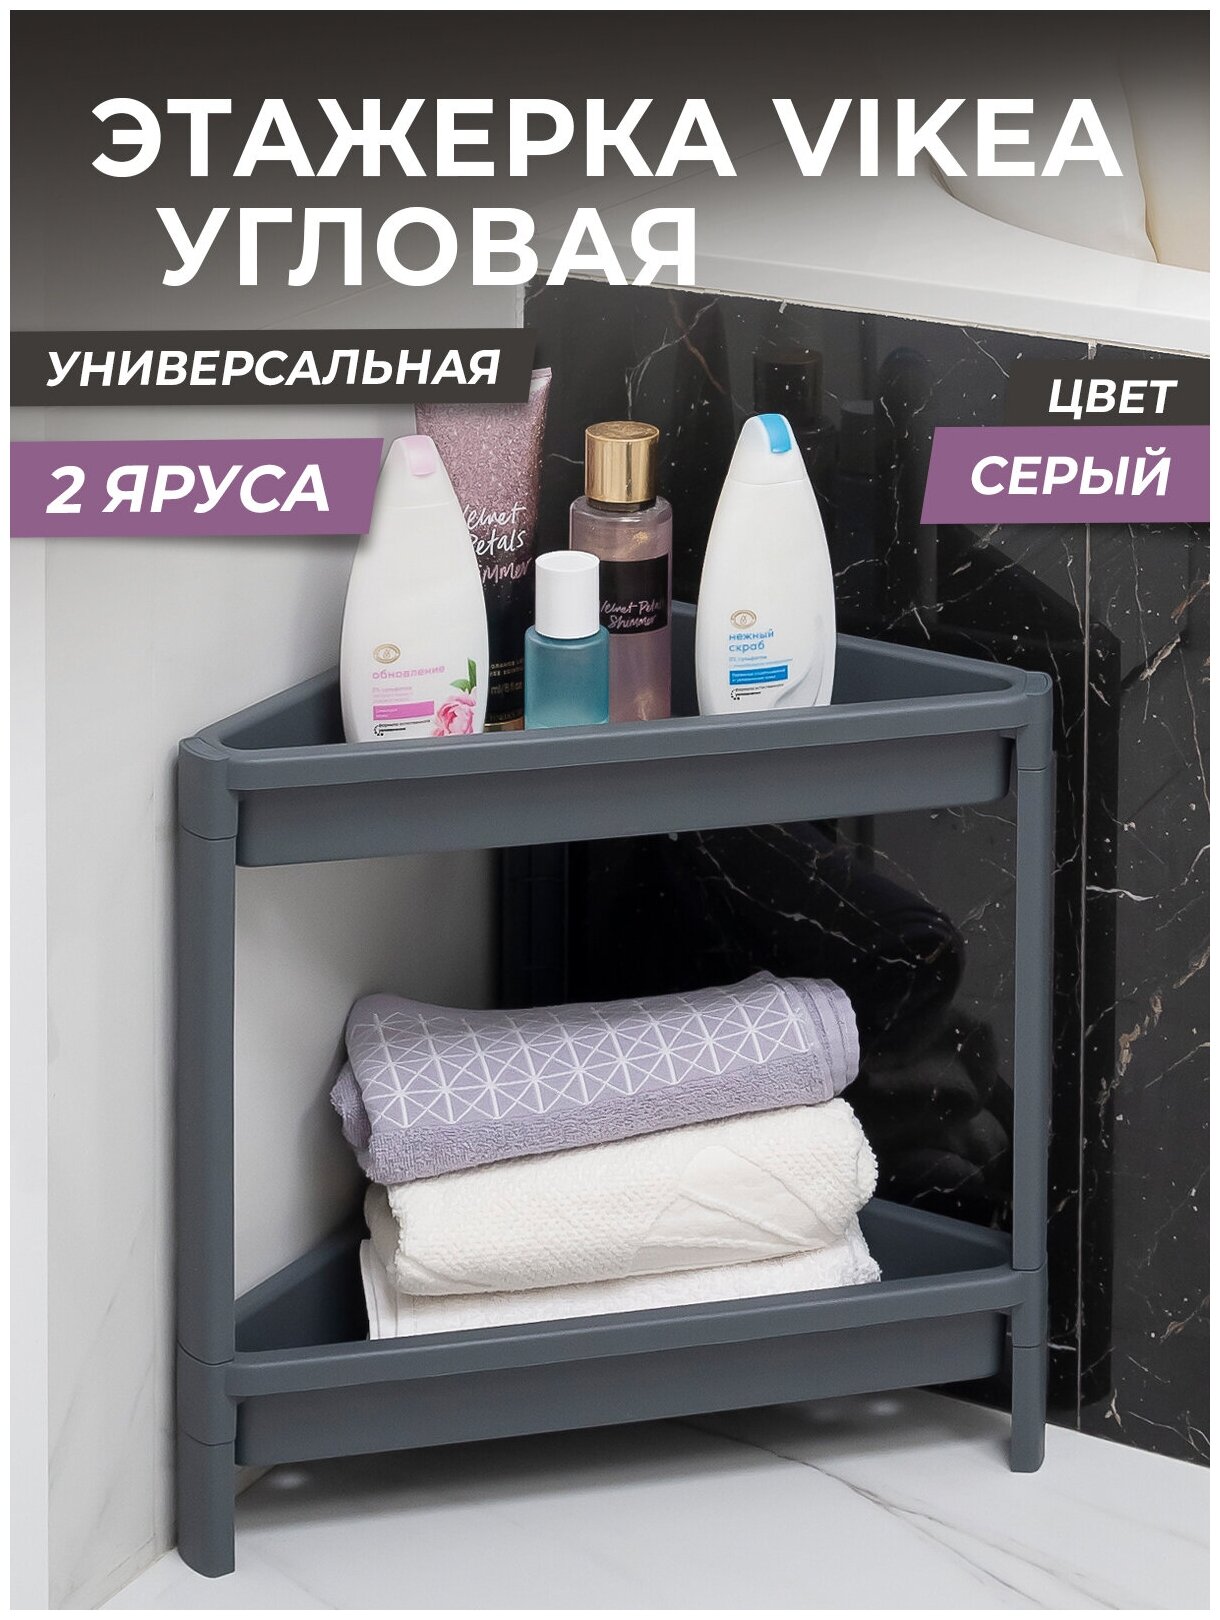 Этажерка для ванной 2х ярусная VIKEA угловая, цвет серый / Стеллаж напольный для кухни / Органайзер для хранения вещей универсальный пластиковый